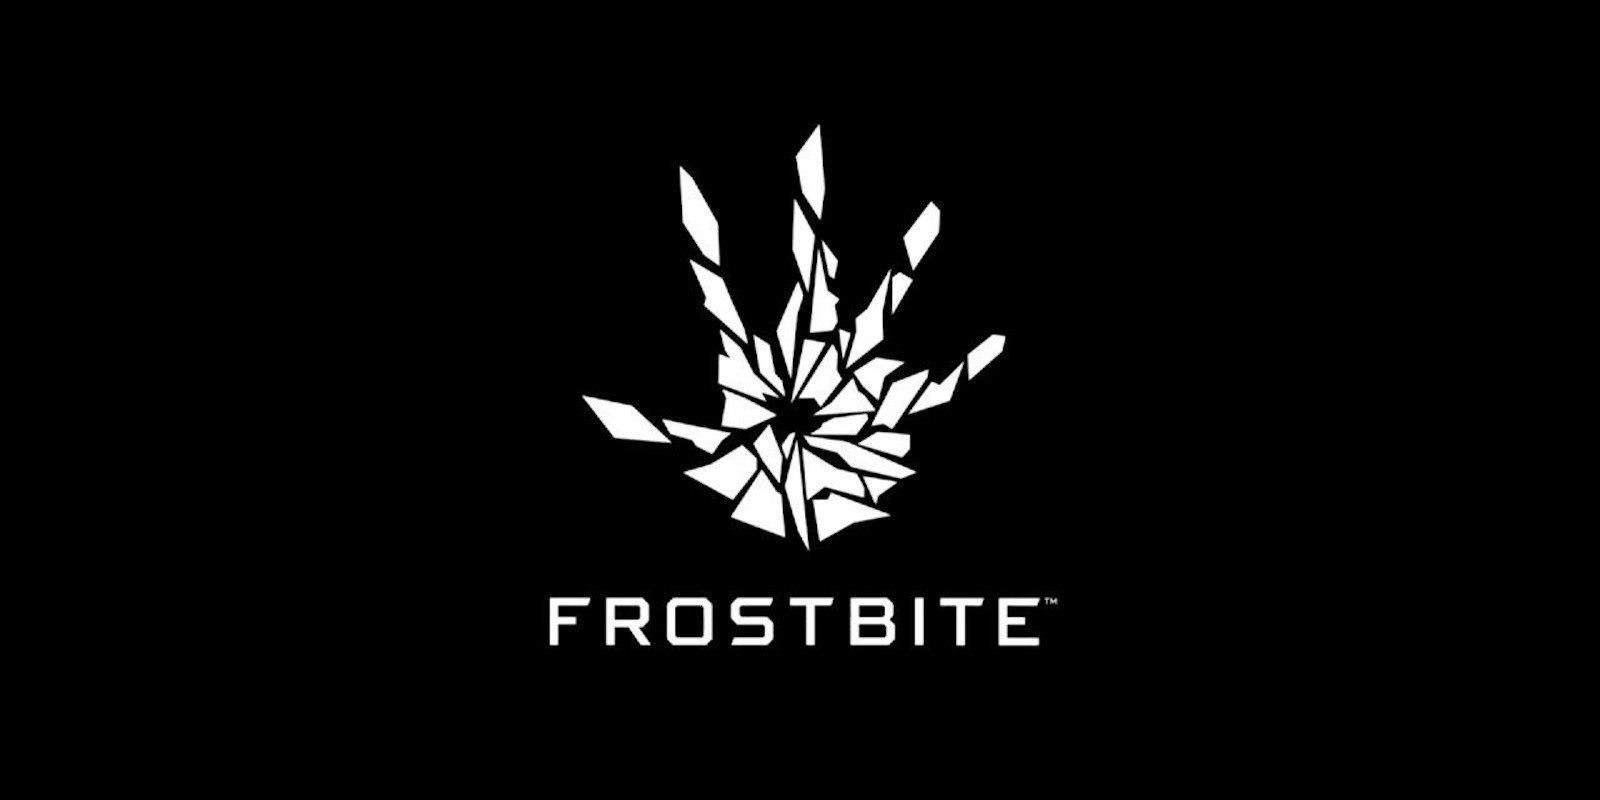 Un ex desarrollador de BioWare habla sobre los problemas con el motor Frostbite